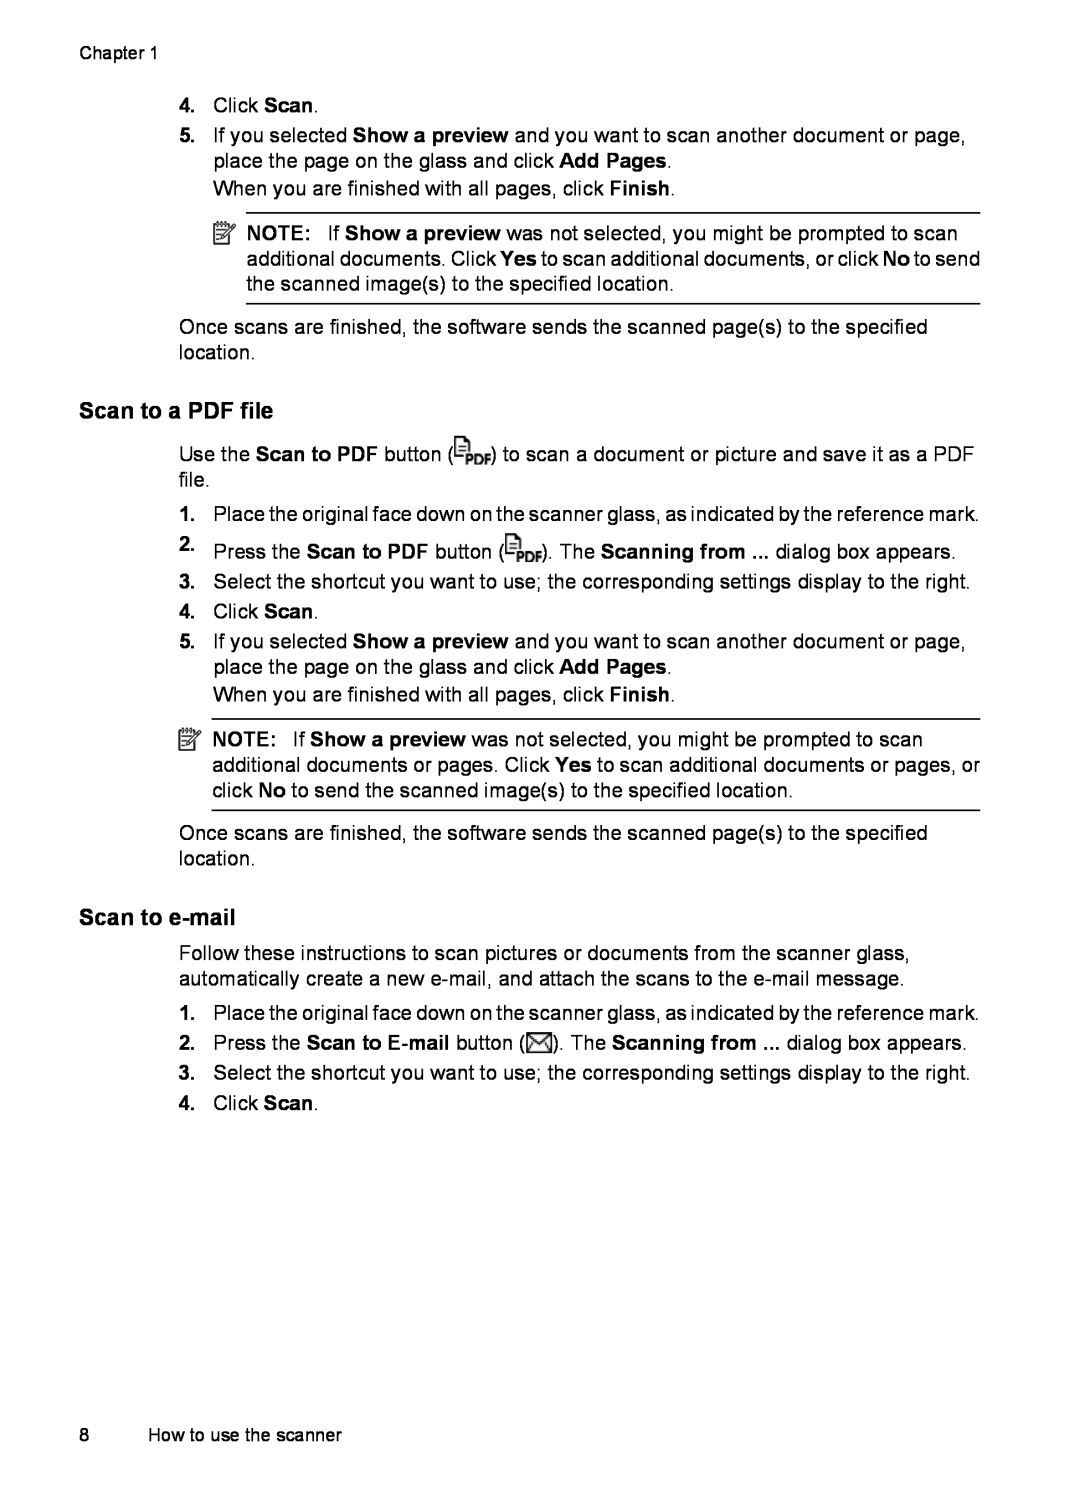 HP G3110 L2698A manual Scan to a PDF file, Scan to e-mail 